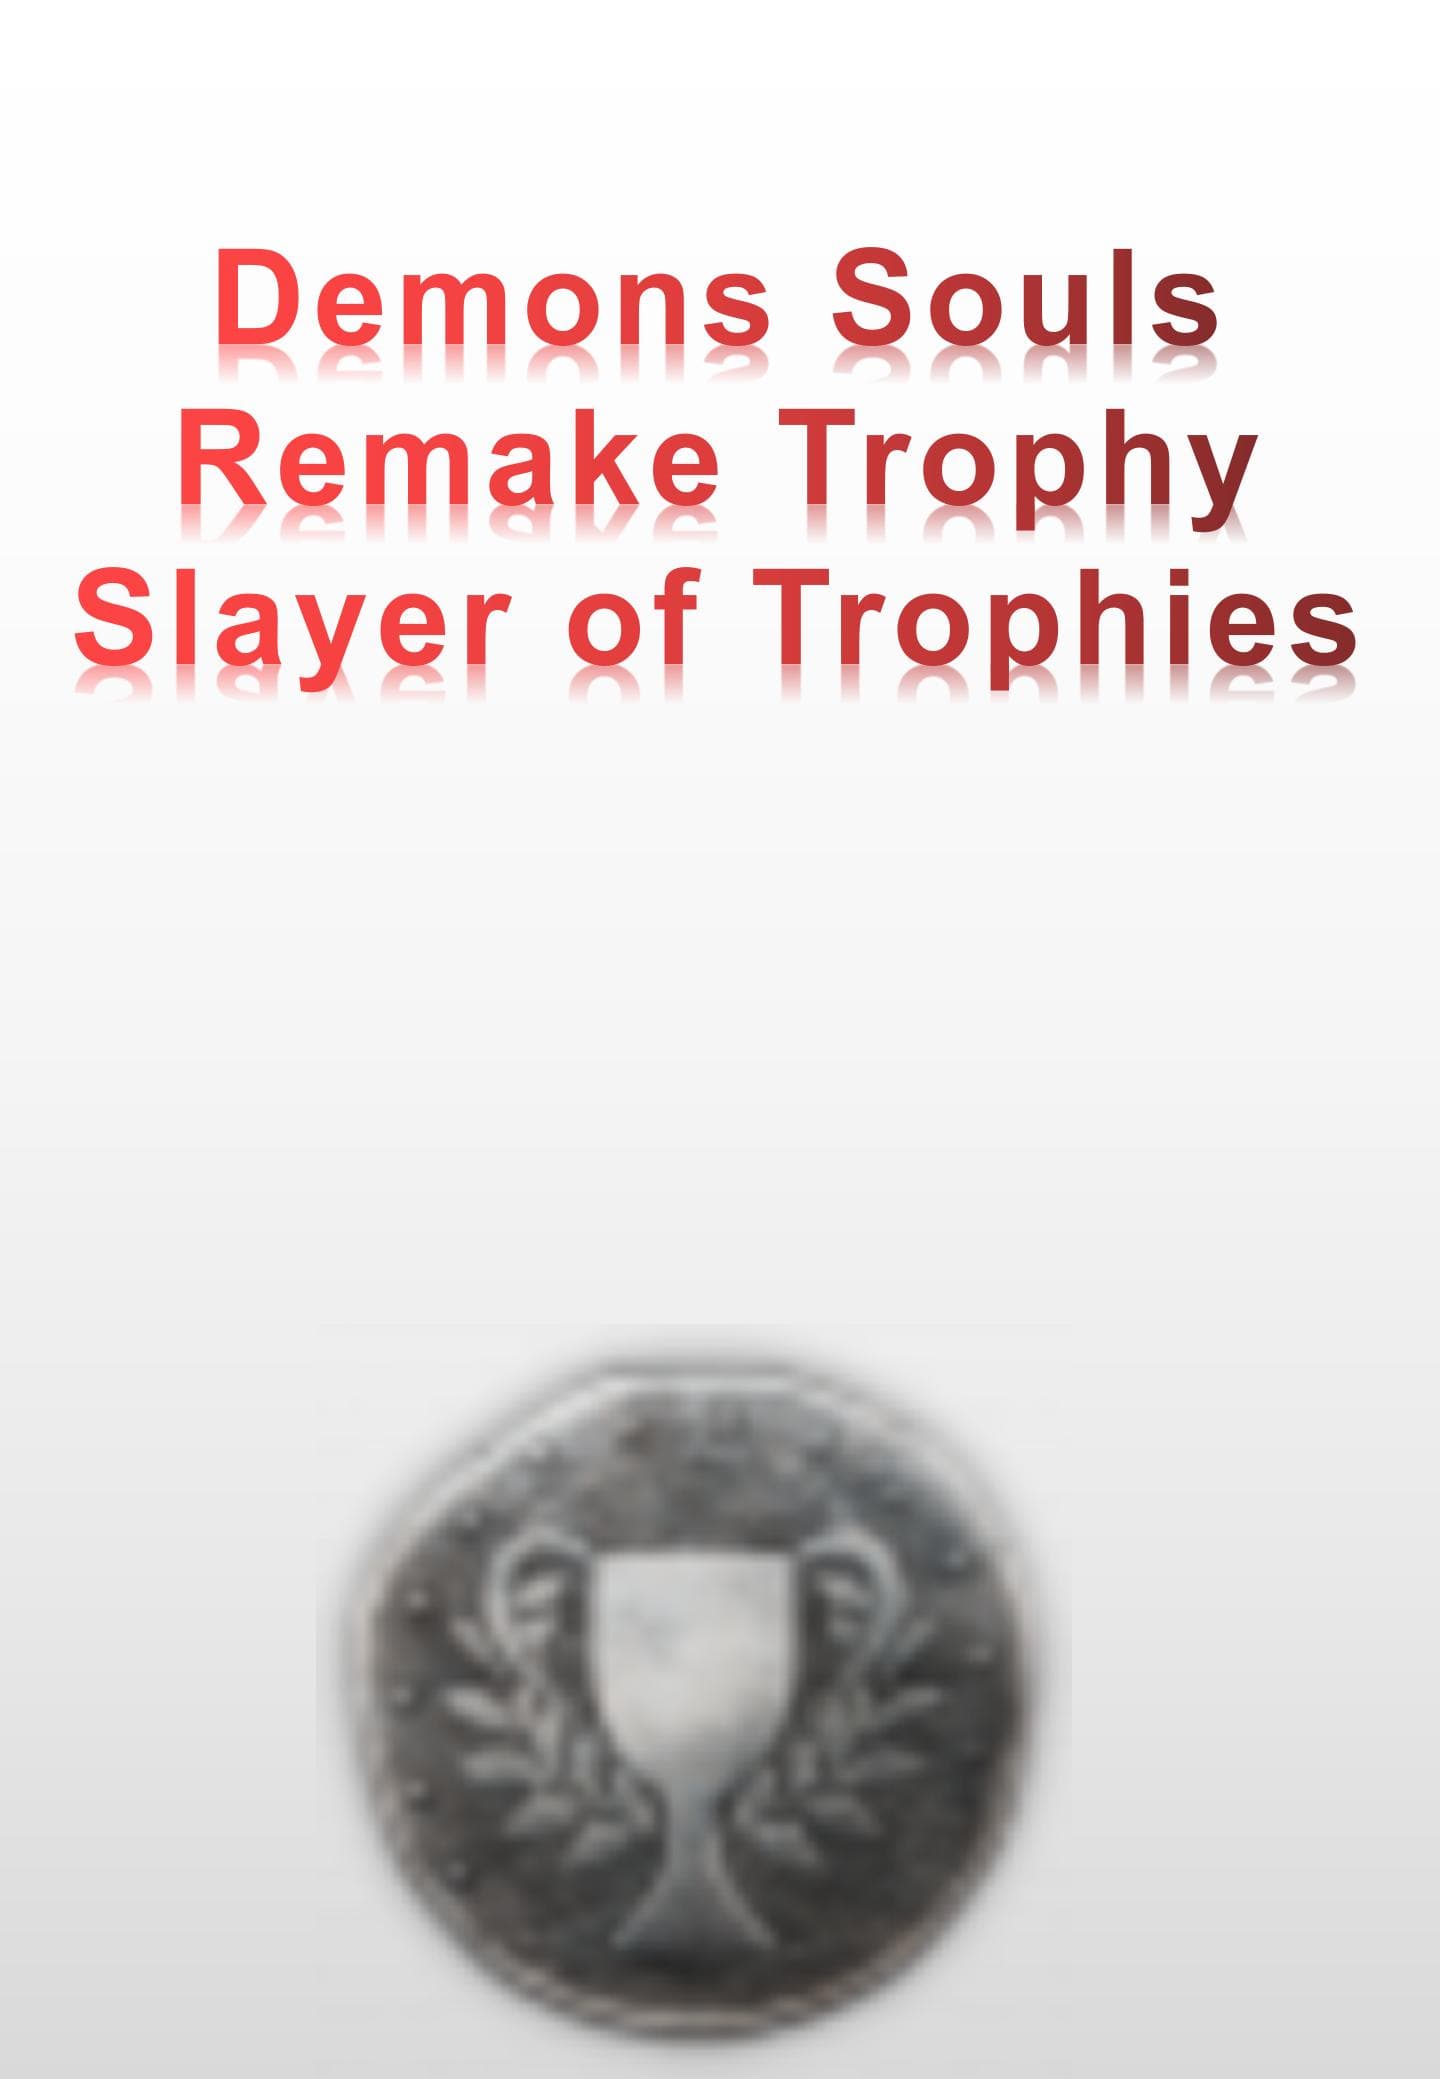 Demons Souls Remake Trophy - Slayer of Trophies